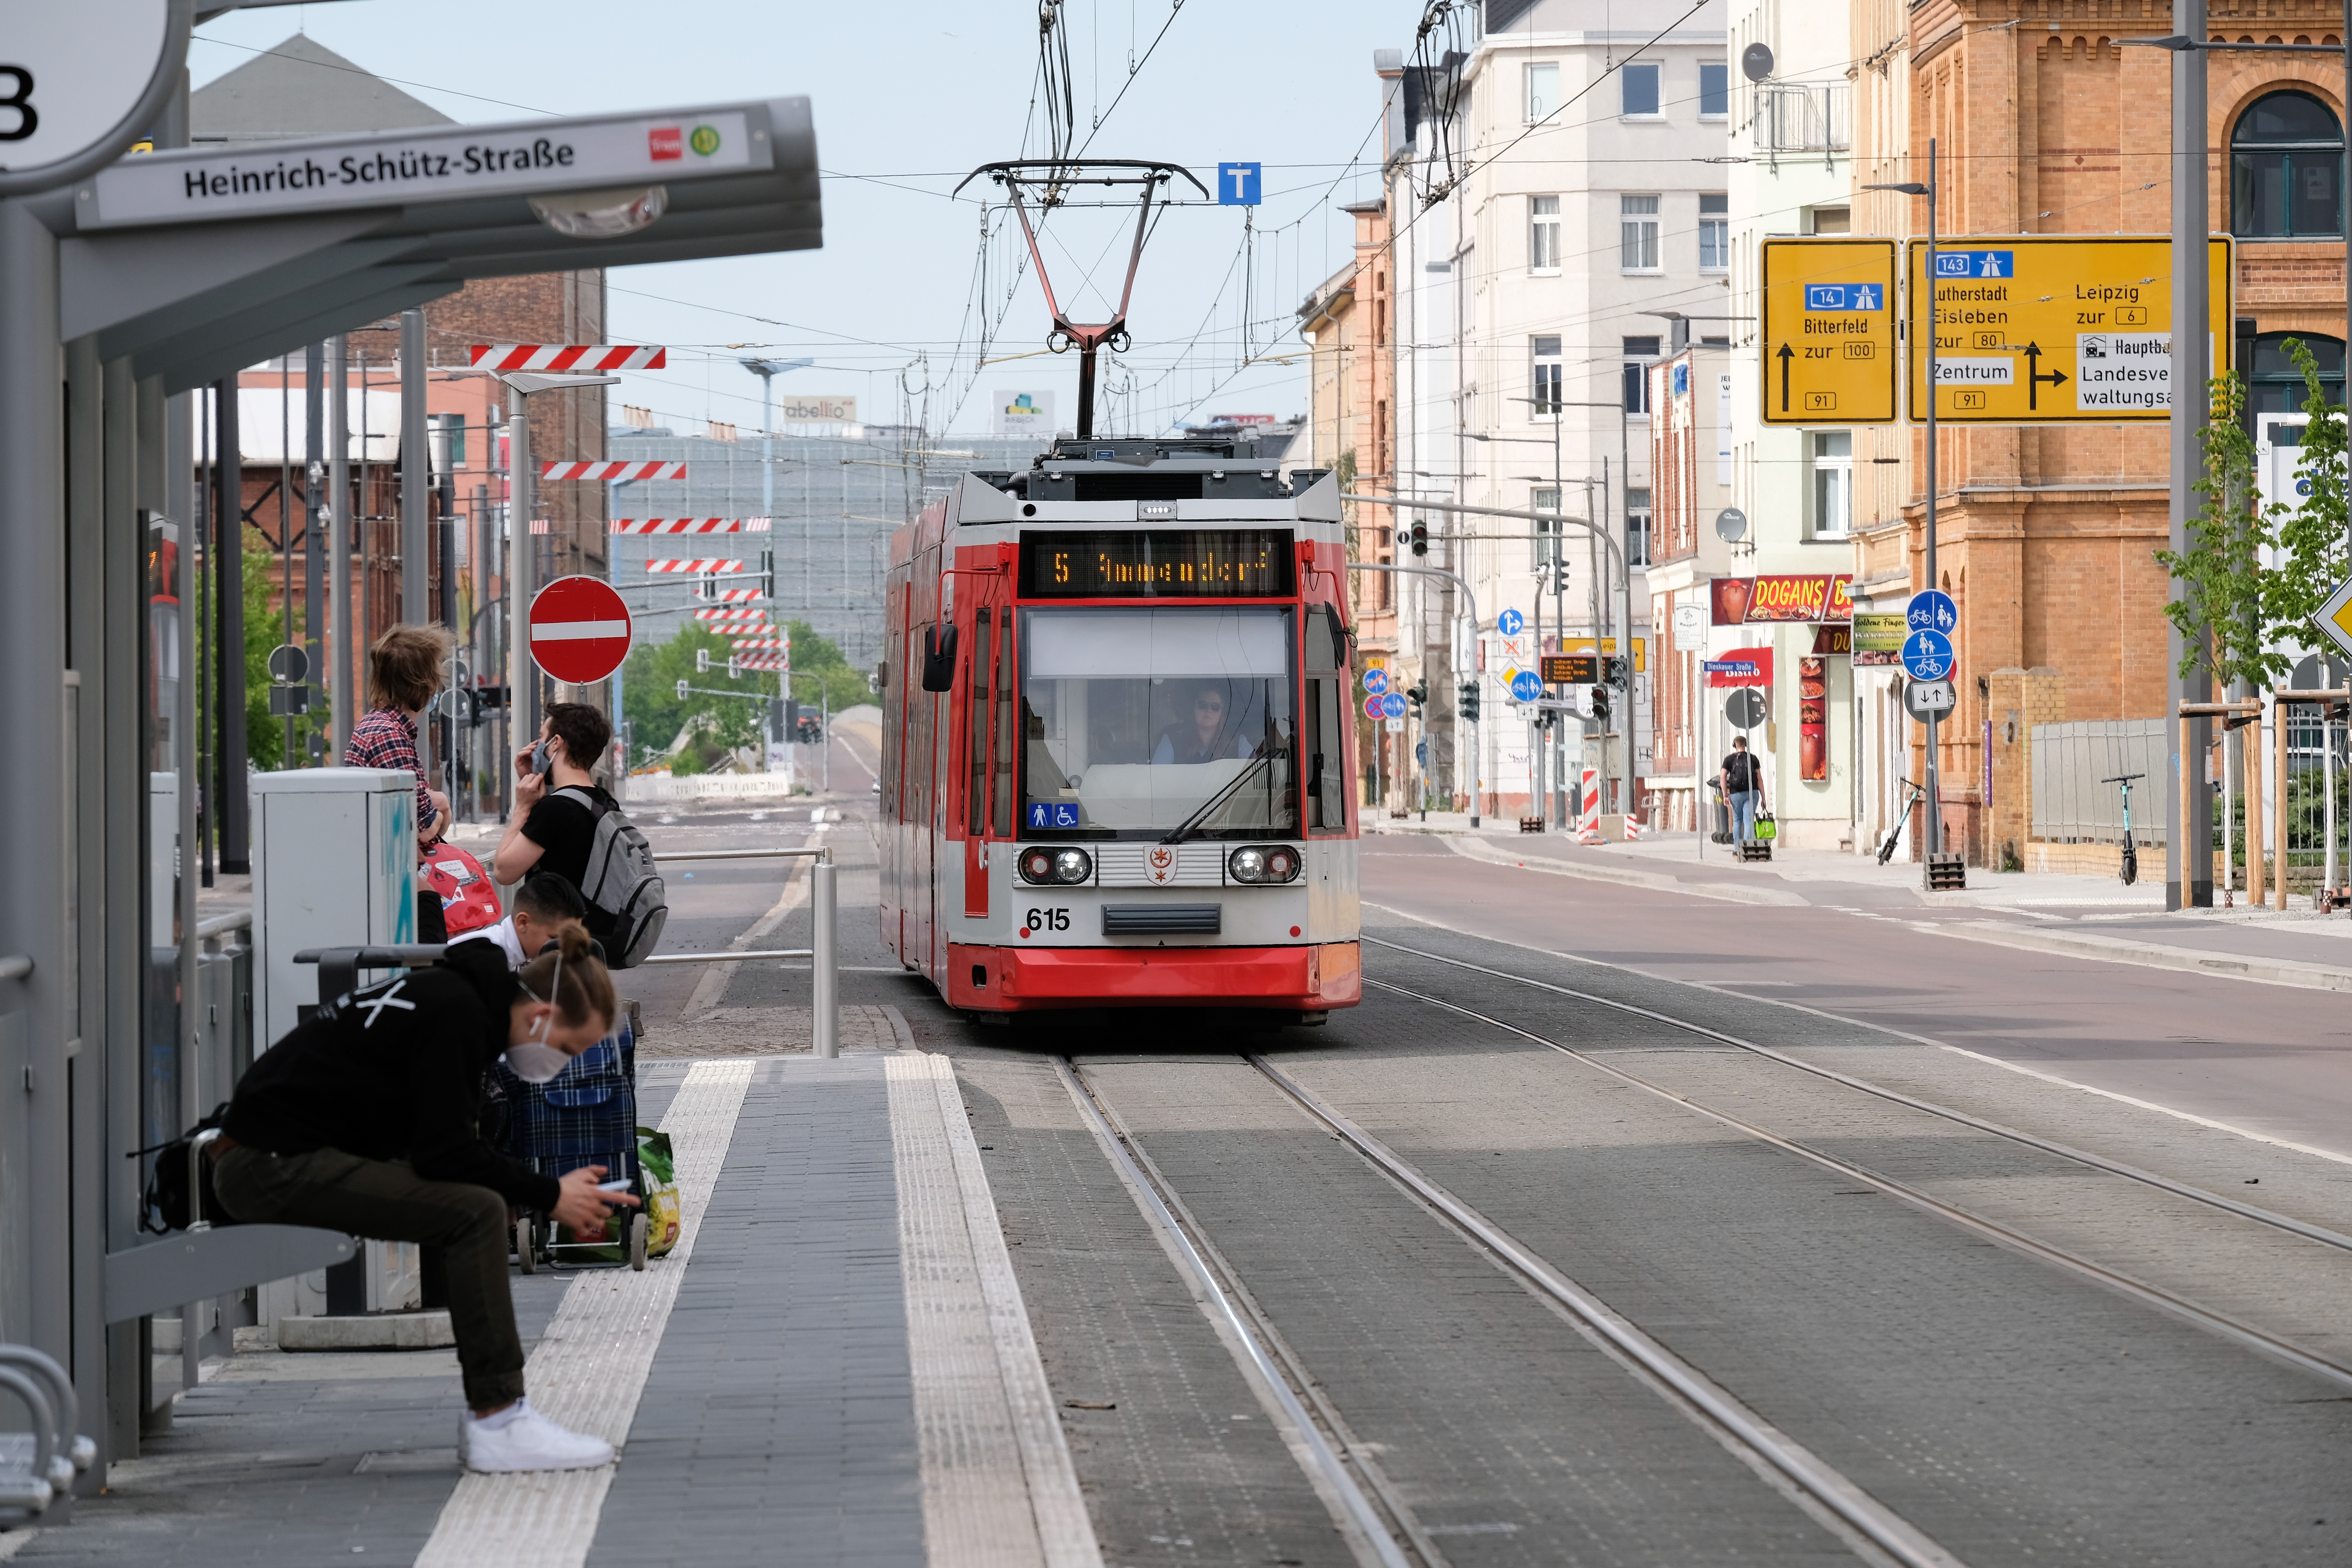 Am linken Bildrand befindet sich die Haltestelle "Heinrich-Schütz-Straße", an die gerade eine rote Straßenbahn der HAVAG heranfährt.